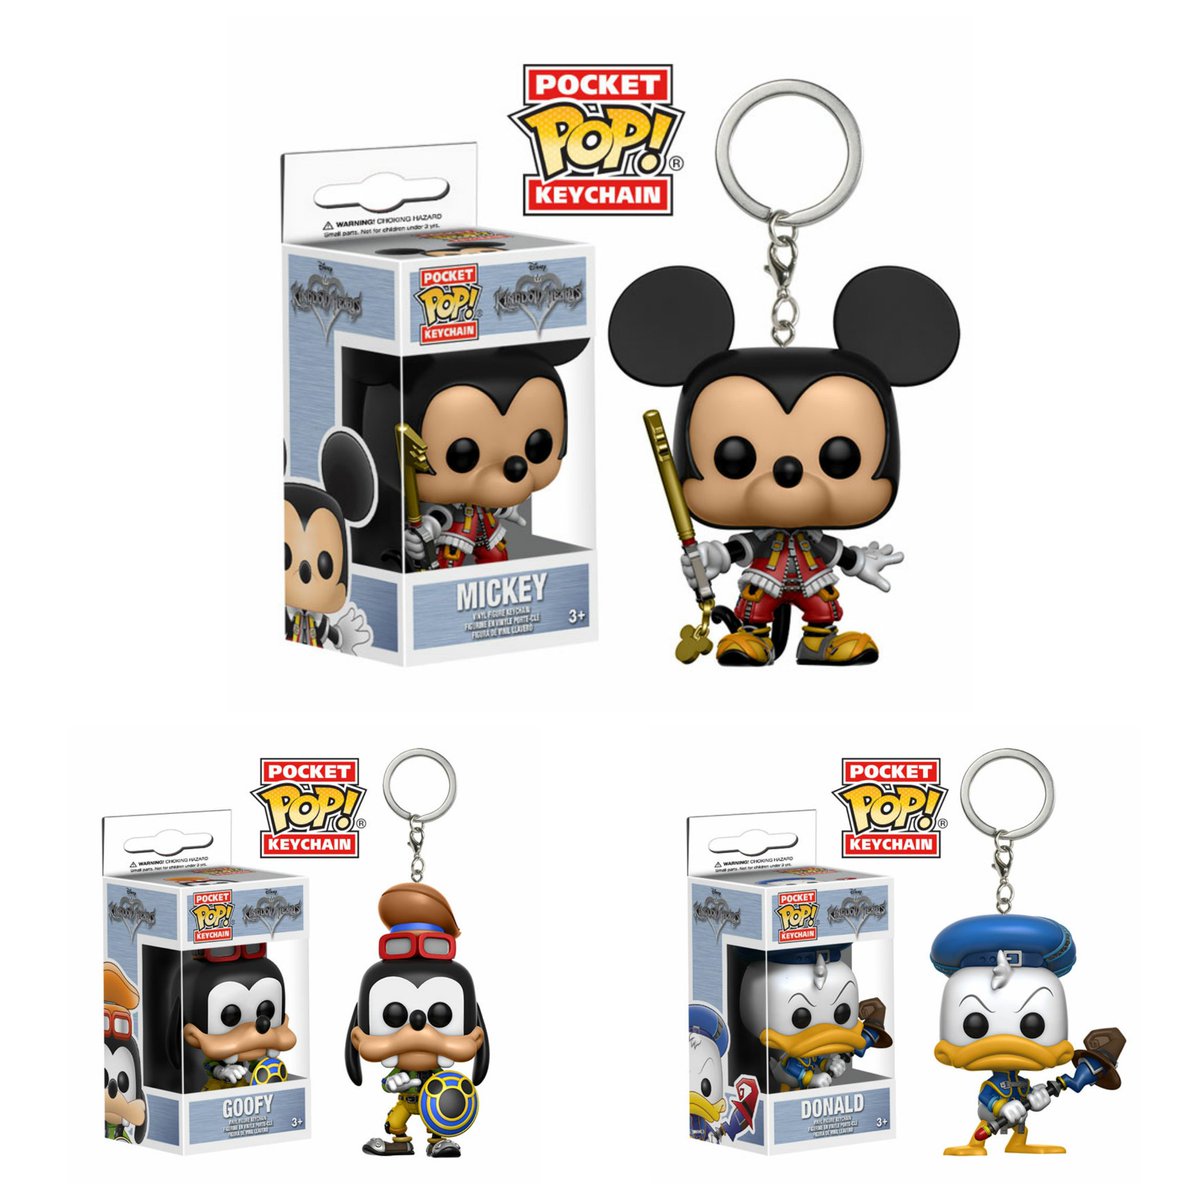 Vinyl Donald 4 CM Disney 131353 Kingdom Hearts Schlüsselanhänger Pocket Pop 